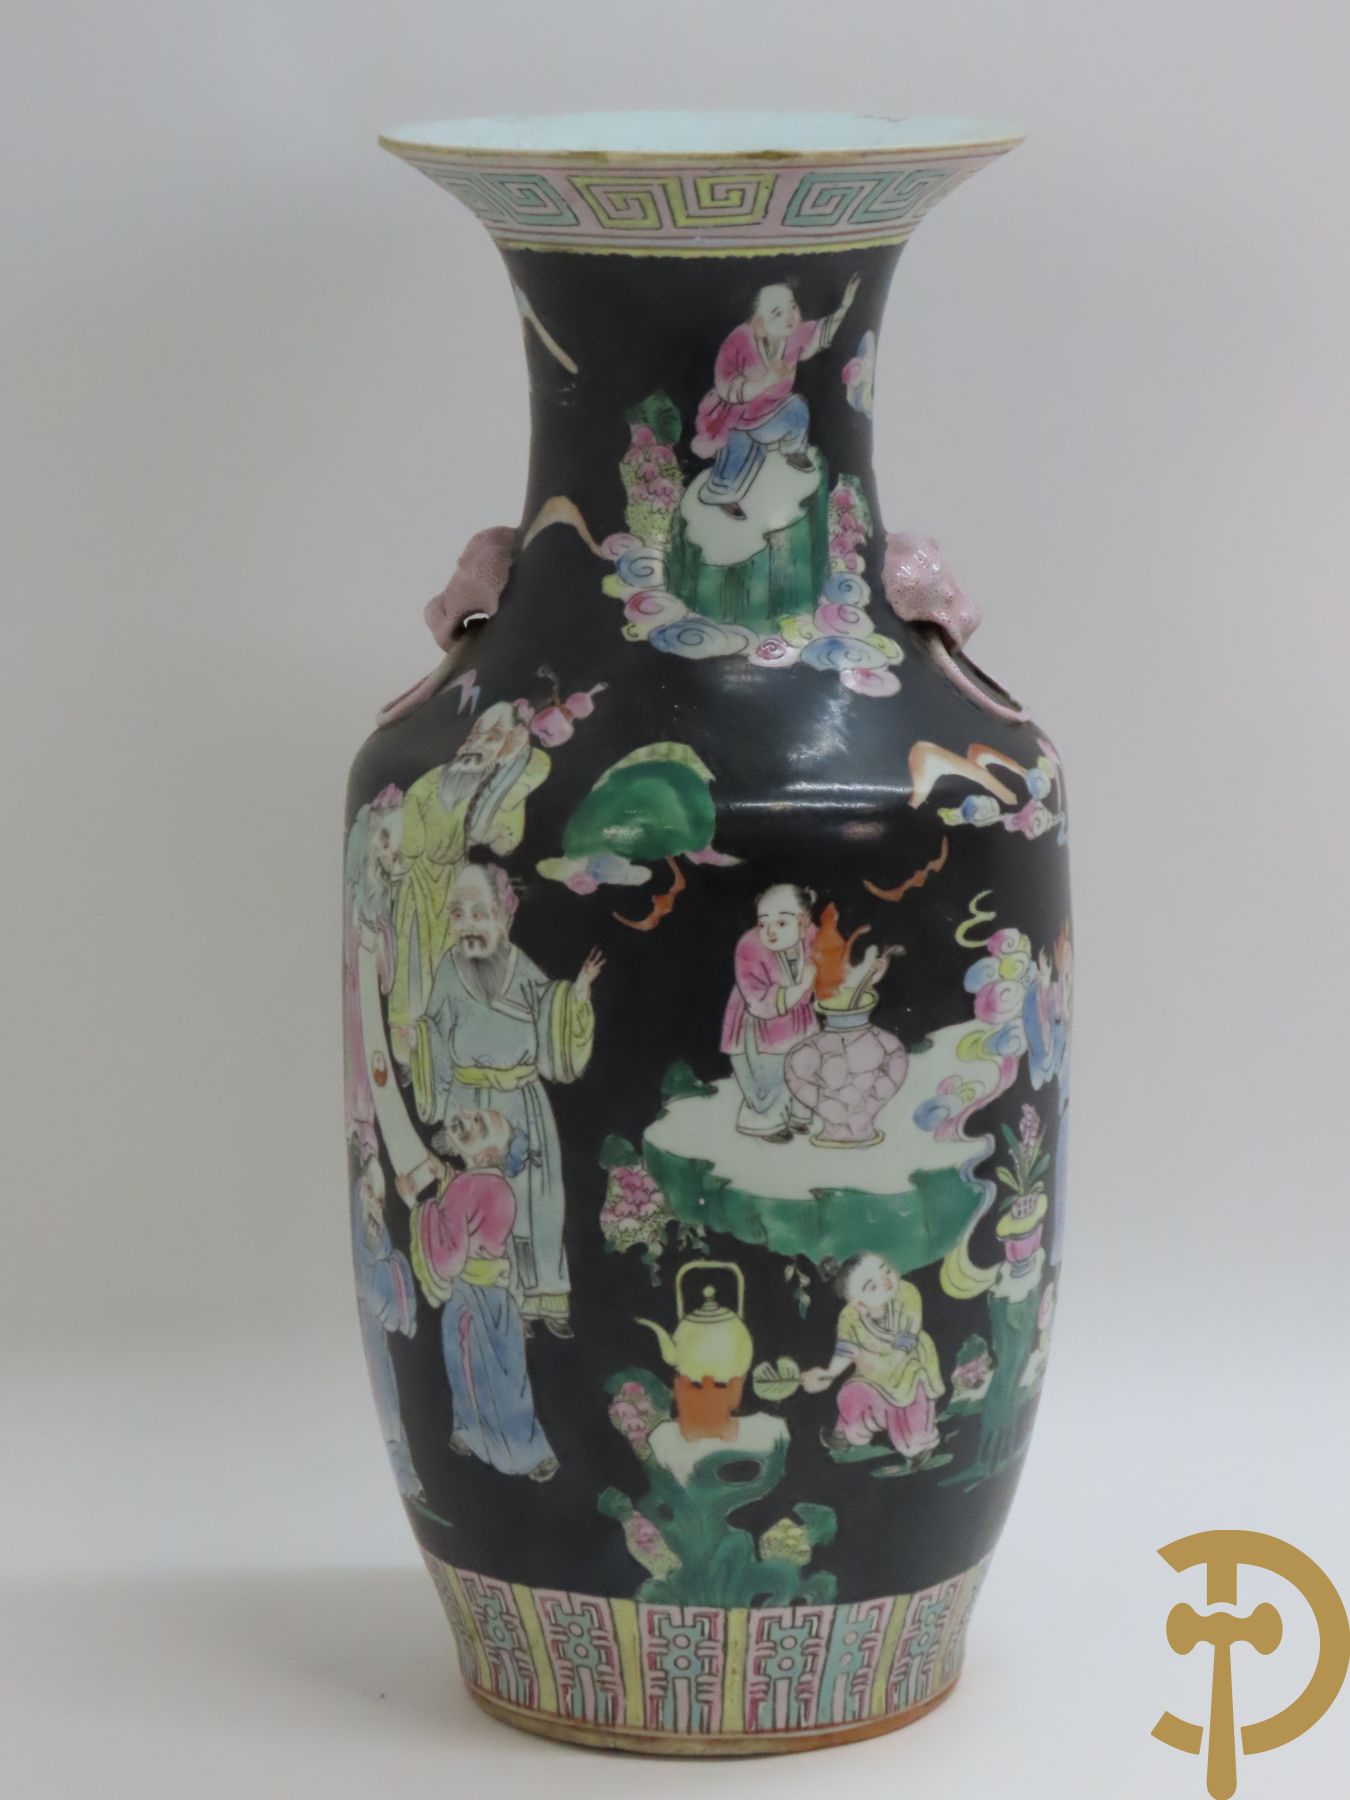 Chinese porseleinen vaas met geanimeerd decor op zwarte fond + Chinese porseleinen vaas met krijgerdecor + Chinese porseleinen vaas met landschaps- en natuurdecor